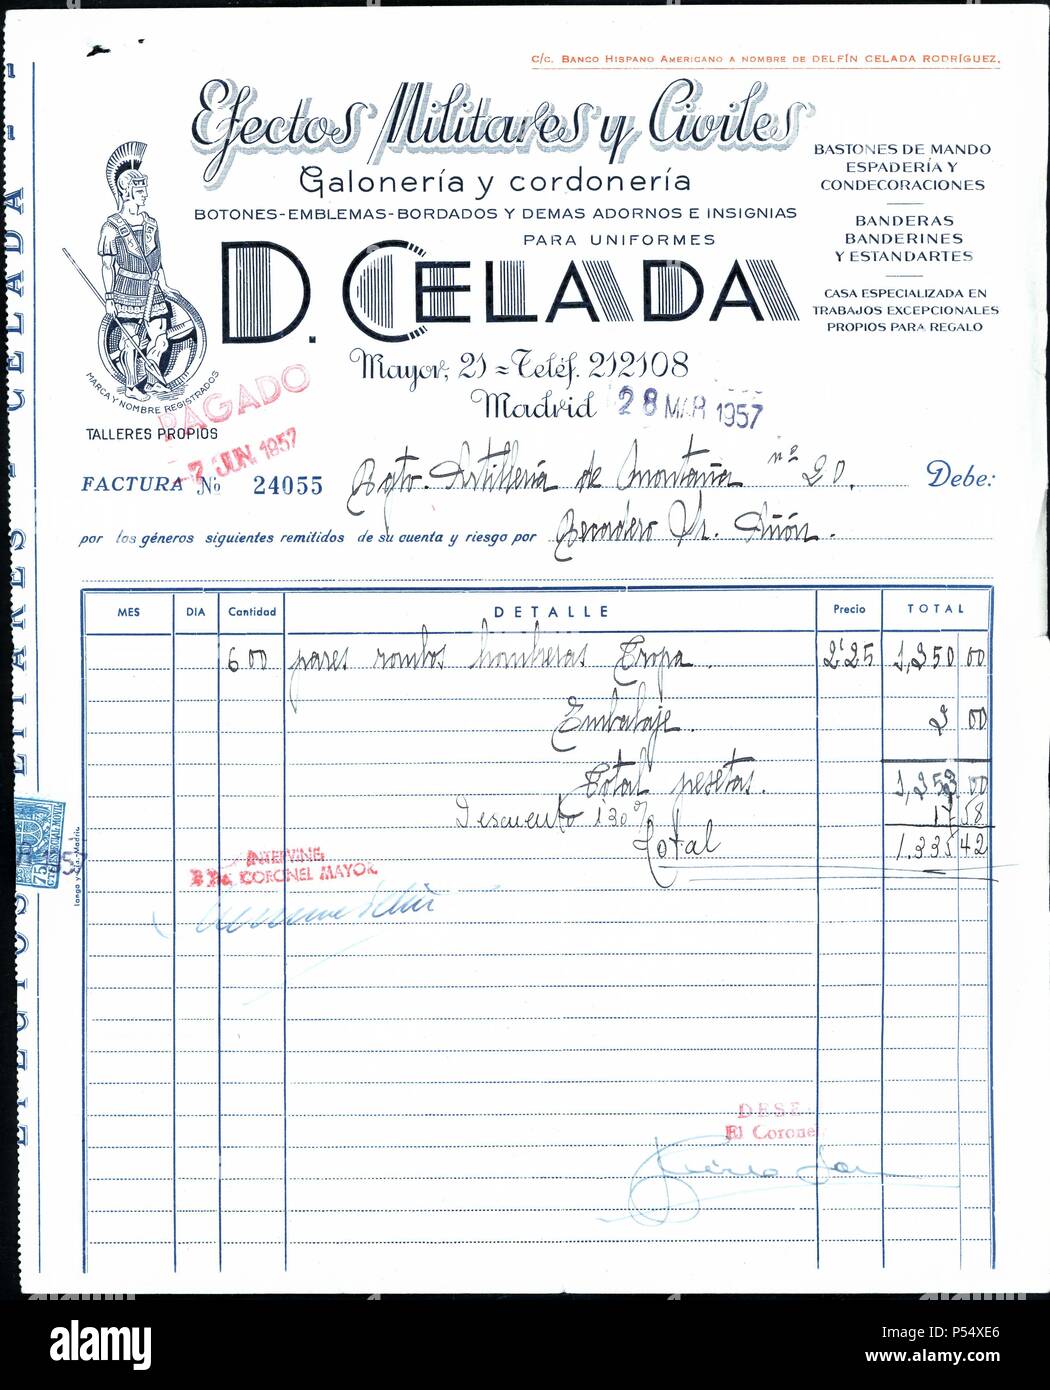 Factura del comercio de efectos militares y civiles, D. Celada, de Madrid.  Marzo de 1957 Stock Photo - Alamy